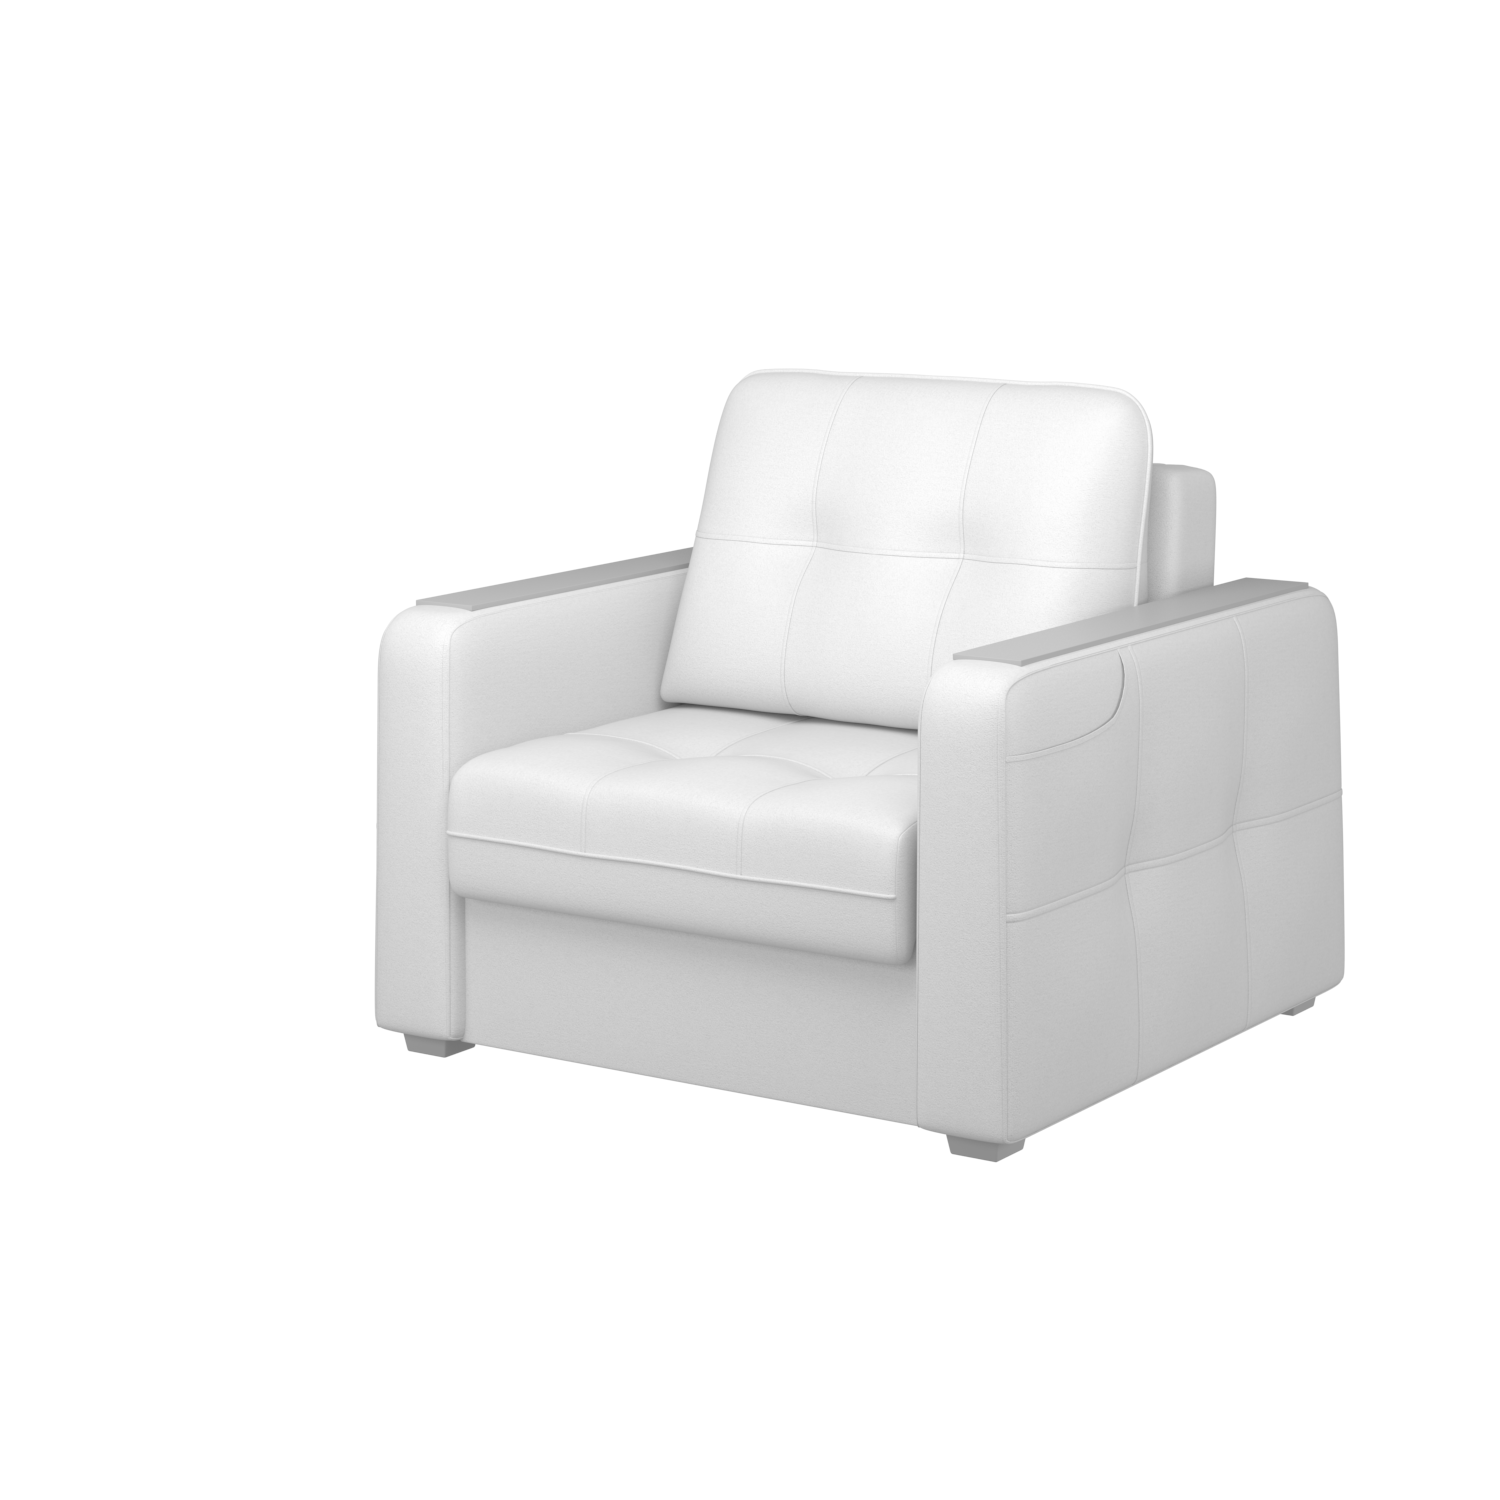 Мягкое кресло с ящиком Киль-3, кКЛ01.кш970.970у